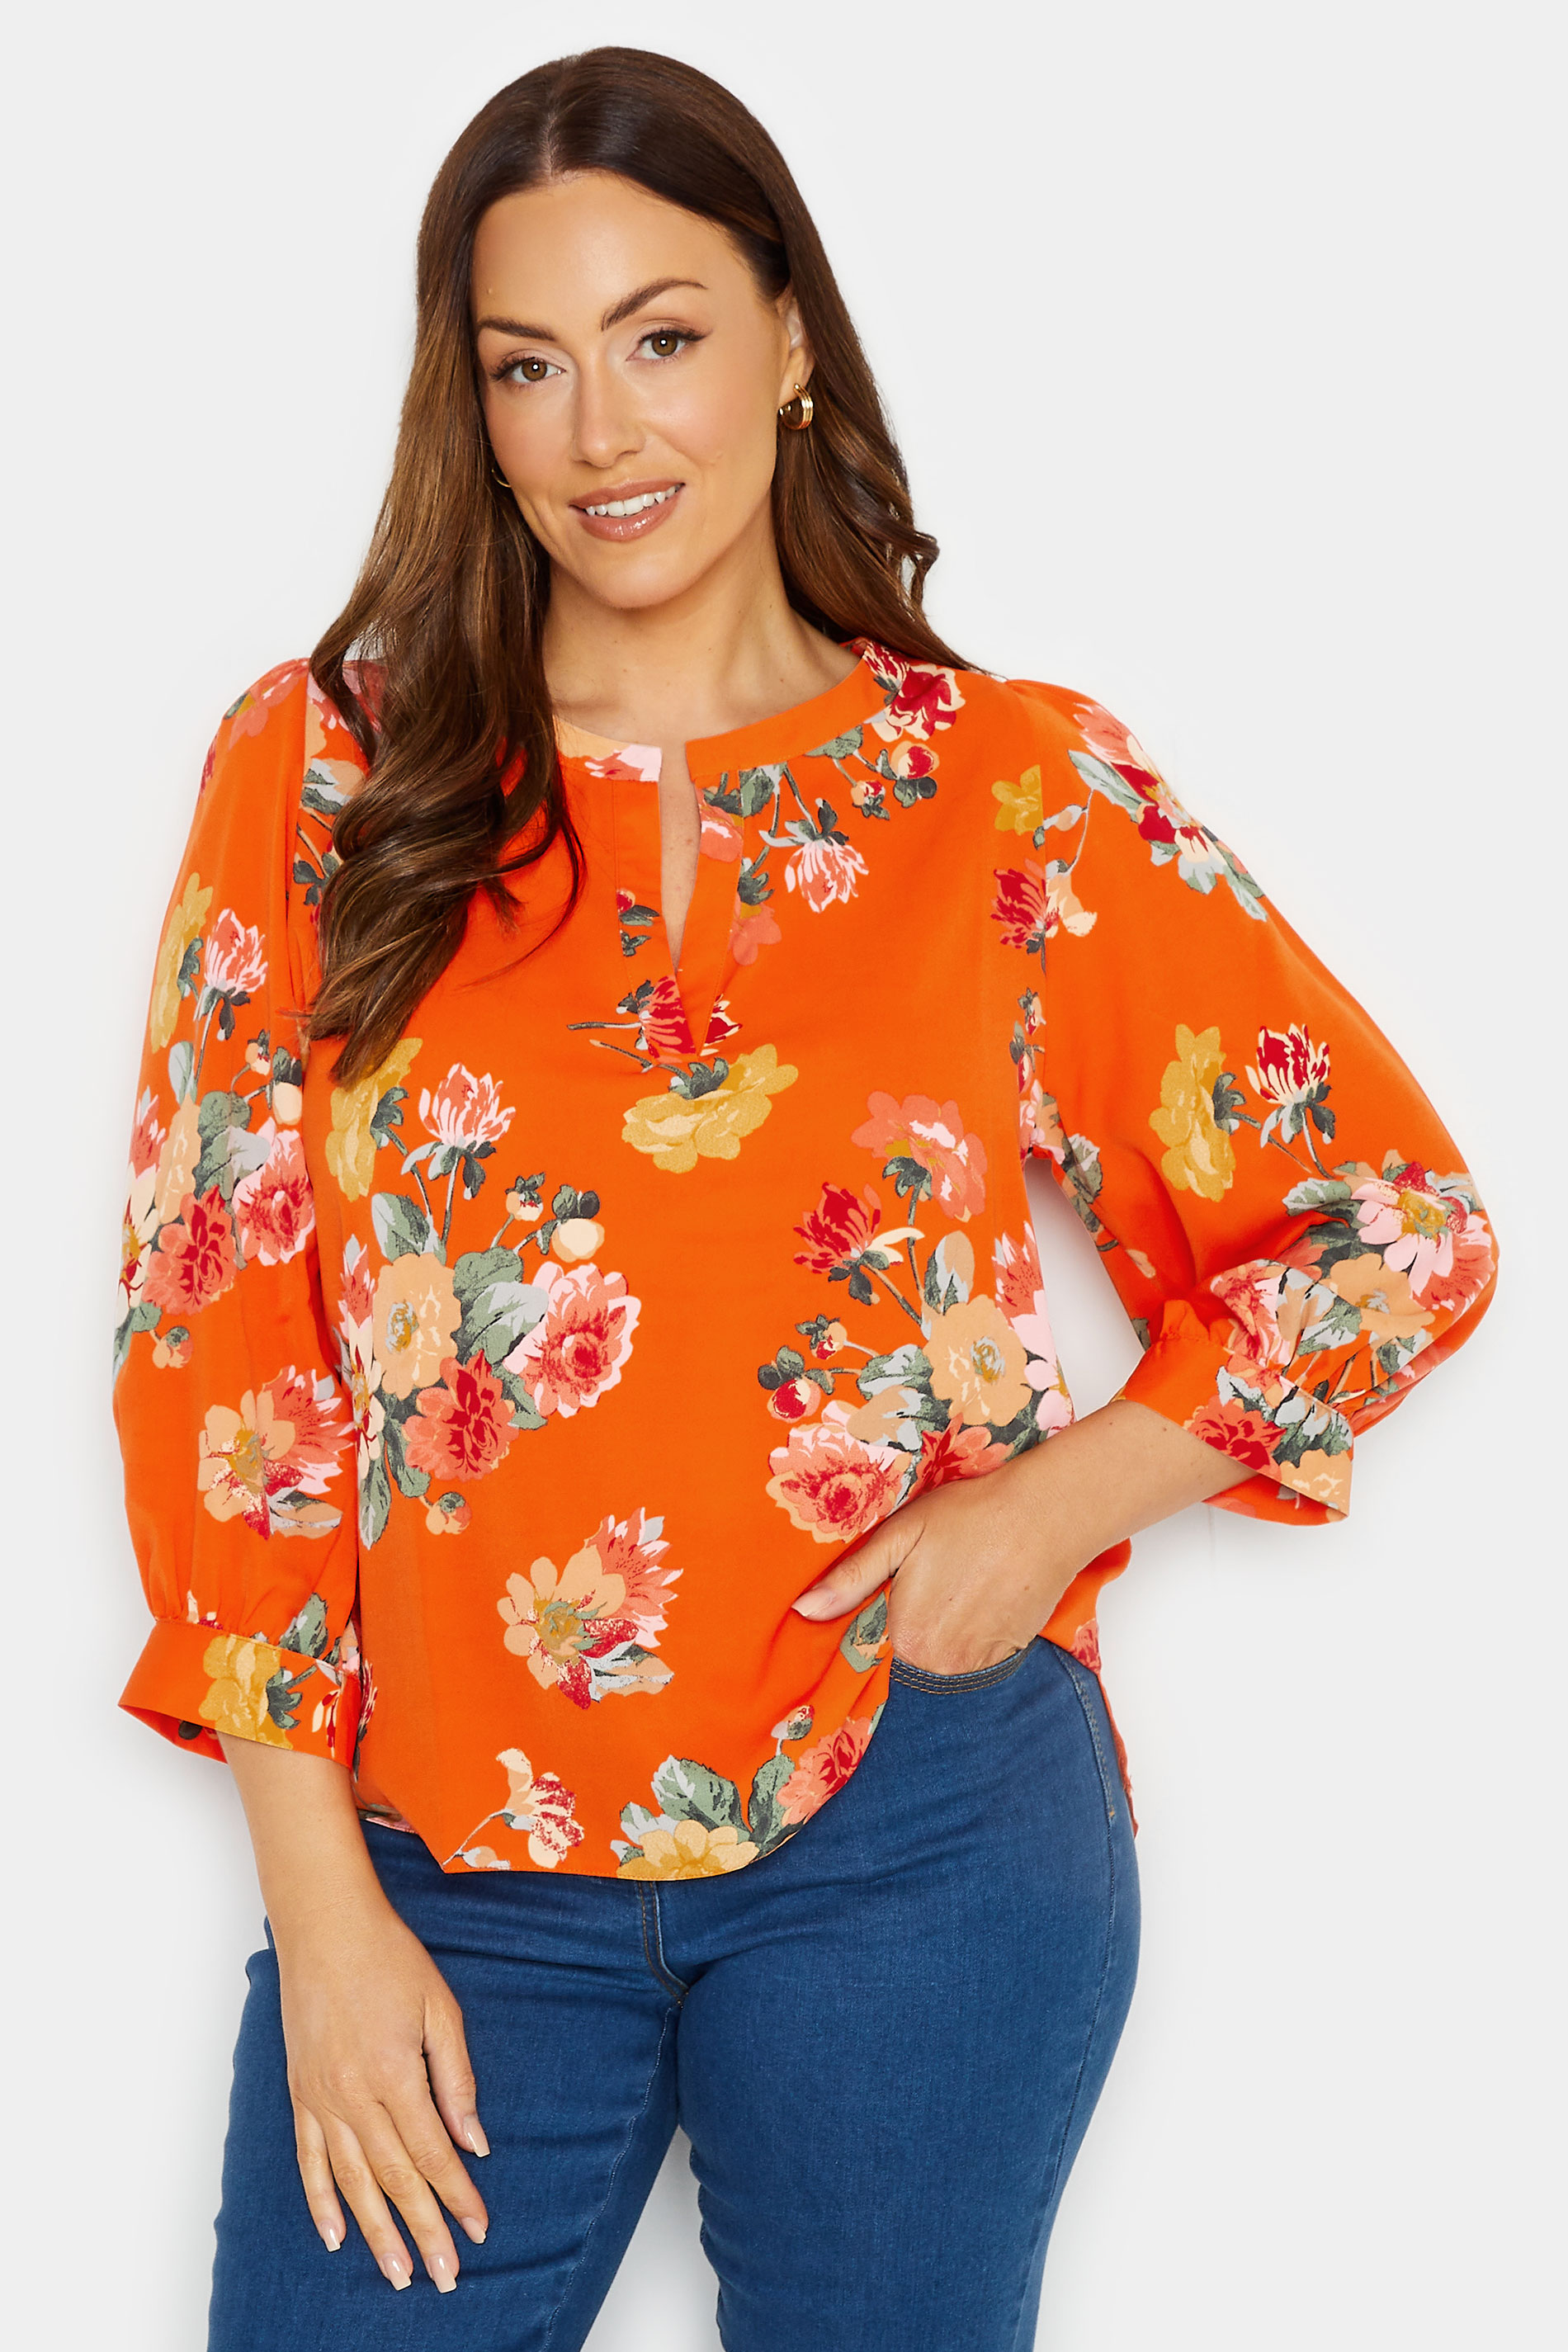 M&Co Orange Floral 3/4 Sleeve Blouse | M&Co 1